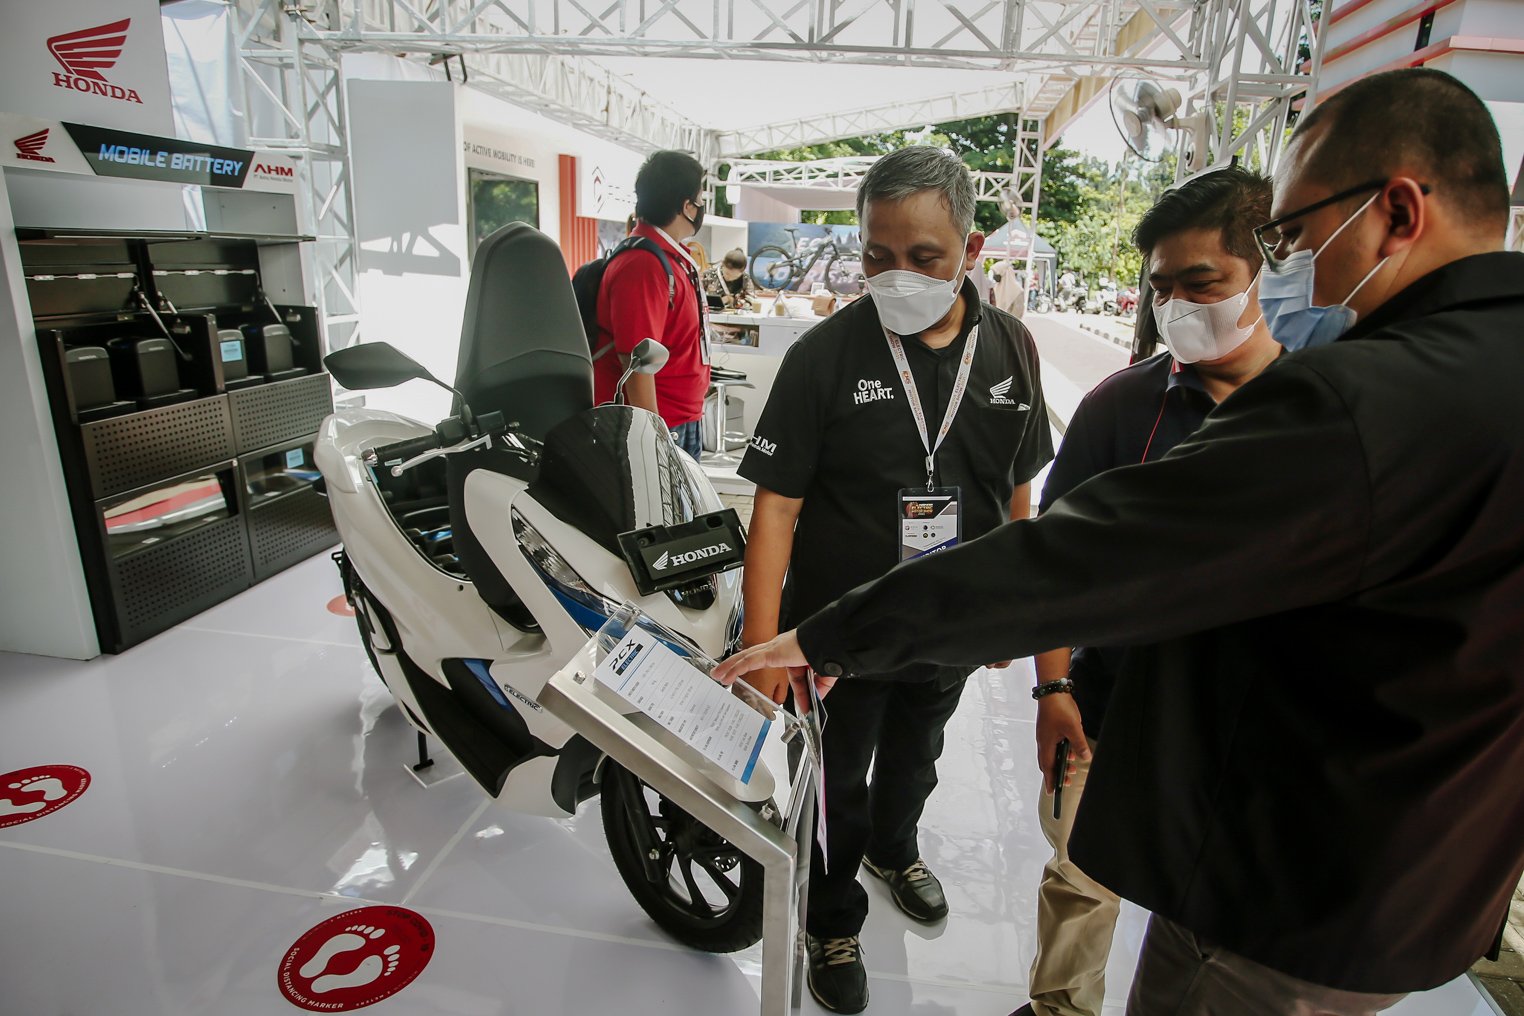 Pengunjung mengamati spesifikasi motor listrik yang dipamerkan di ajang Pameran Indonesia Electric Motor Show (IEMS) 2021 di Puspiptek, Serpong, Tangerang Selatan, Banten, Kamis (25/11/2021). Keberadaan motor listrik dari berbagai merk yang dipamerkan di ajang IEMS 2021 tersebut menjadi kendaraan yang paling diminati banyak pengunjung. ANTARA FOTO/Muhammad Iqbal/wsj.